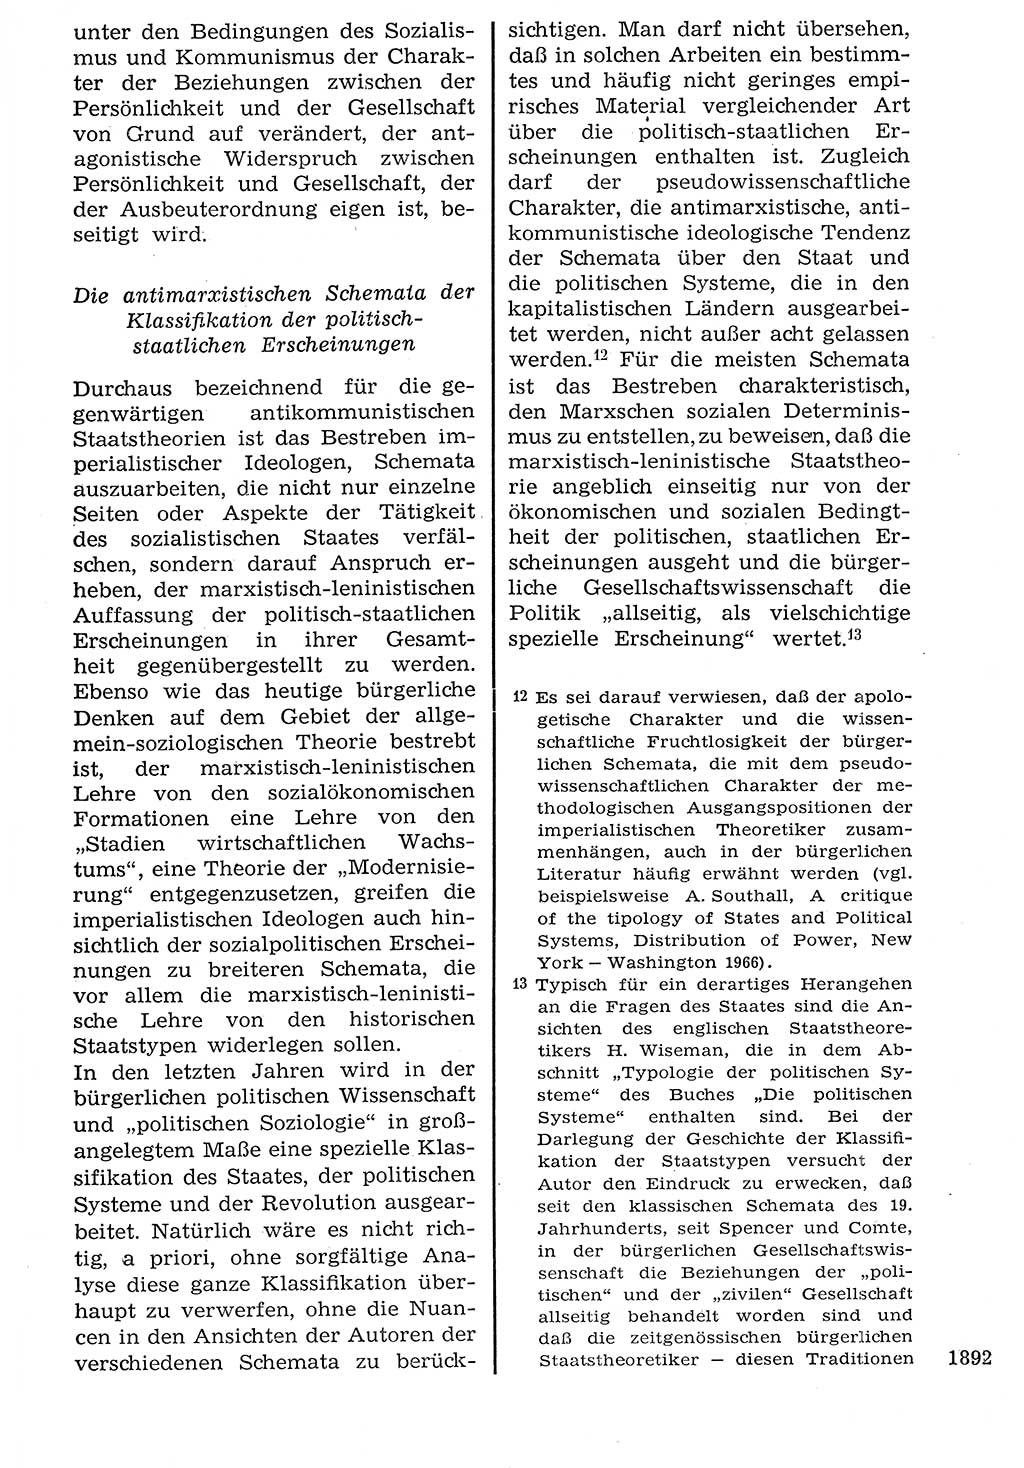 Staat und Recht (StuR), 17. Jahrgang [Deutsche Demokratische Republik (DDR)] 1968, Seite 1892 (StuR DDR 1968, S. 1892)